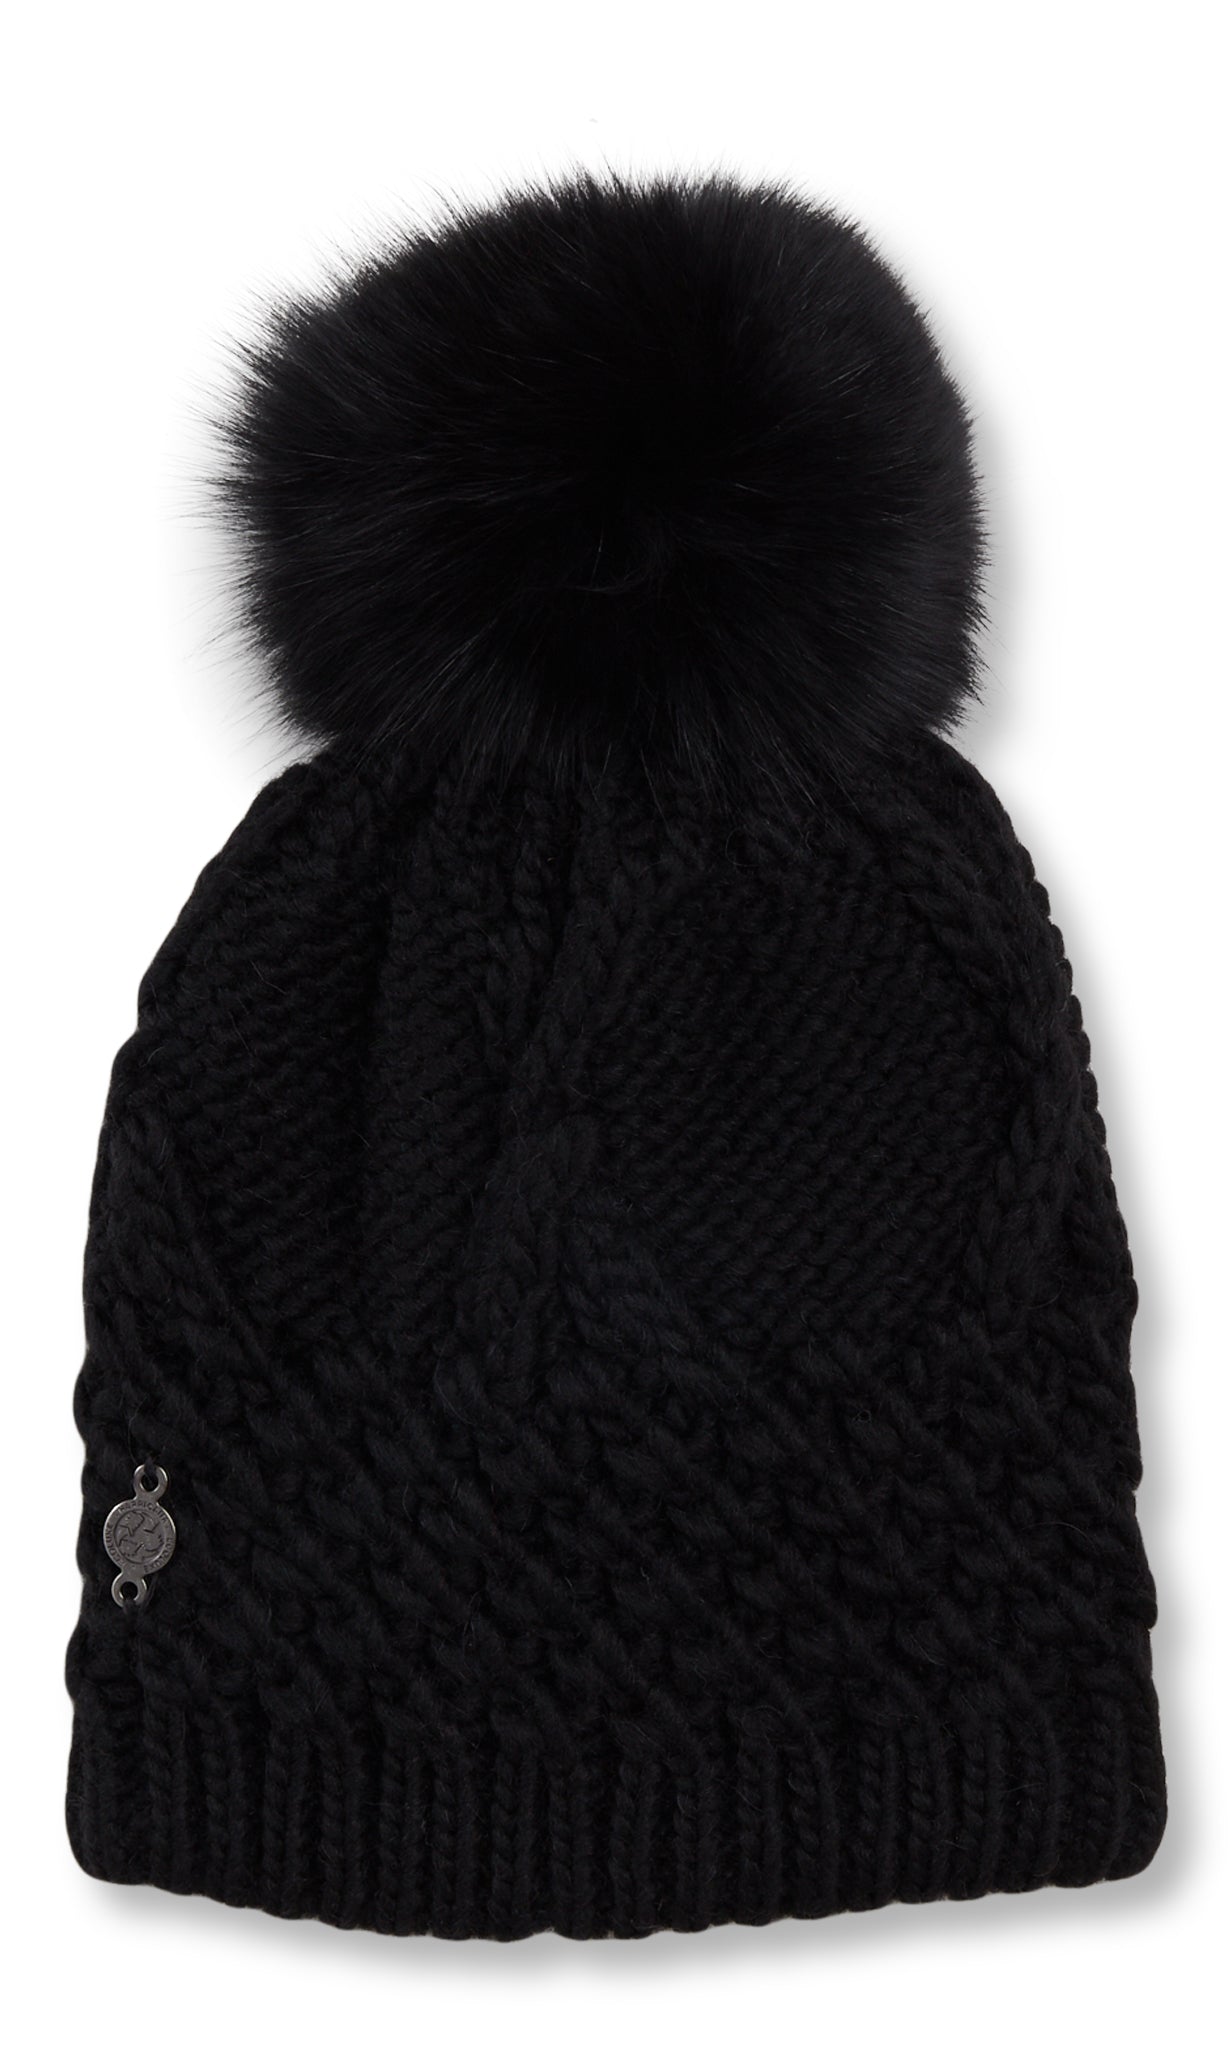 Bonnet hiver fait main, béret tricot femme, chapeau laine alpaga